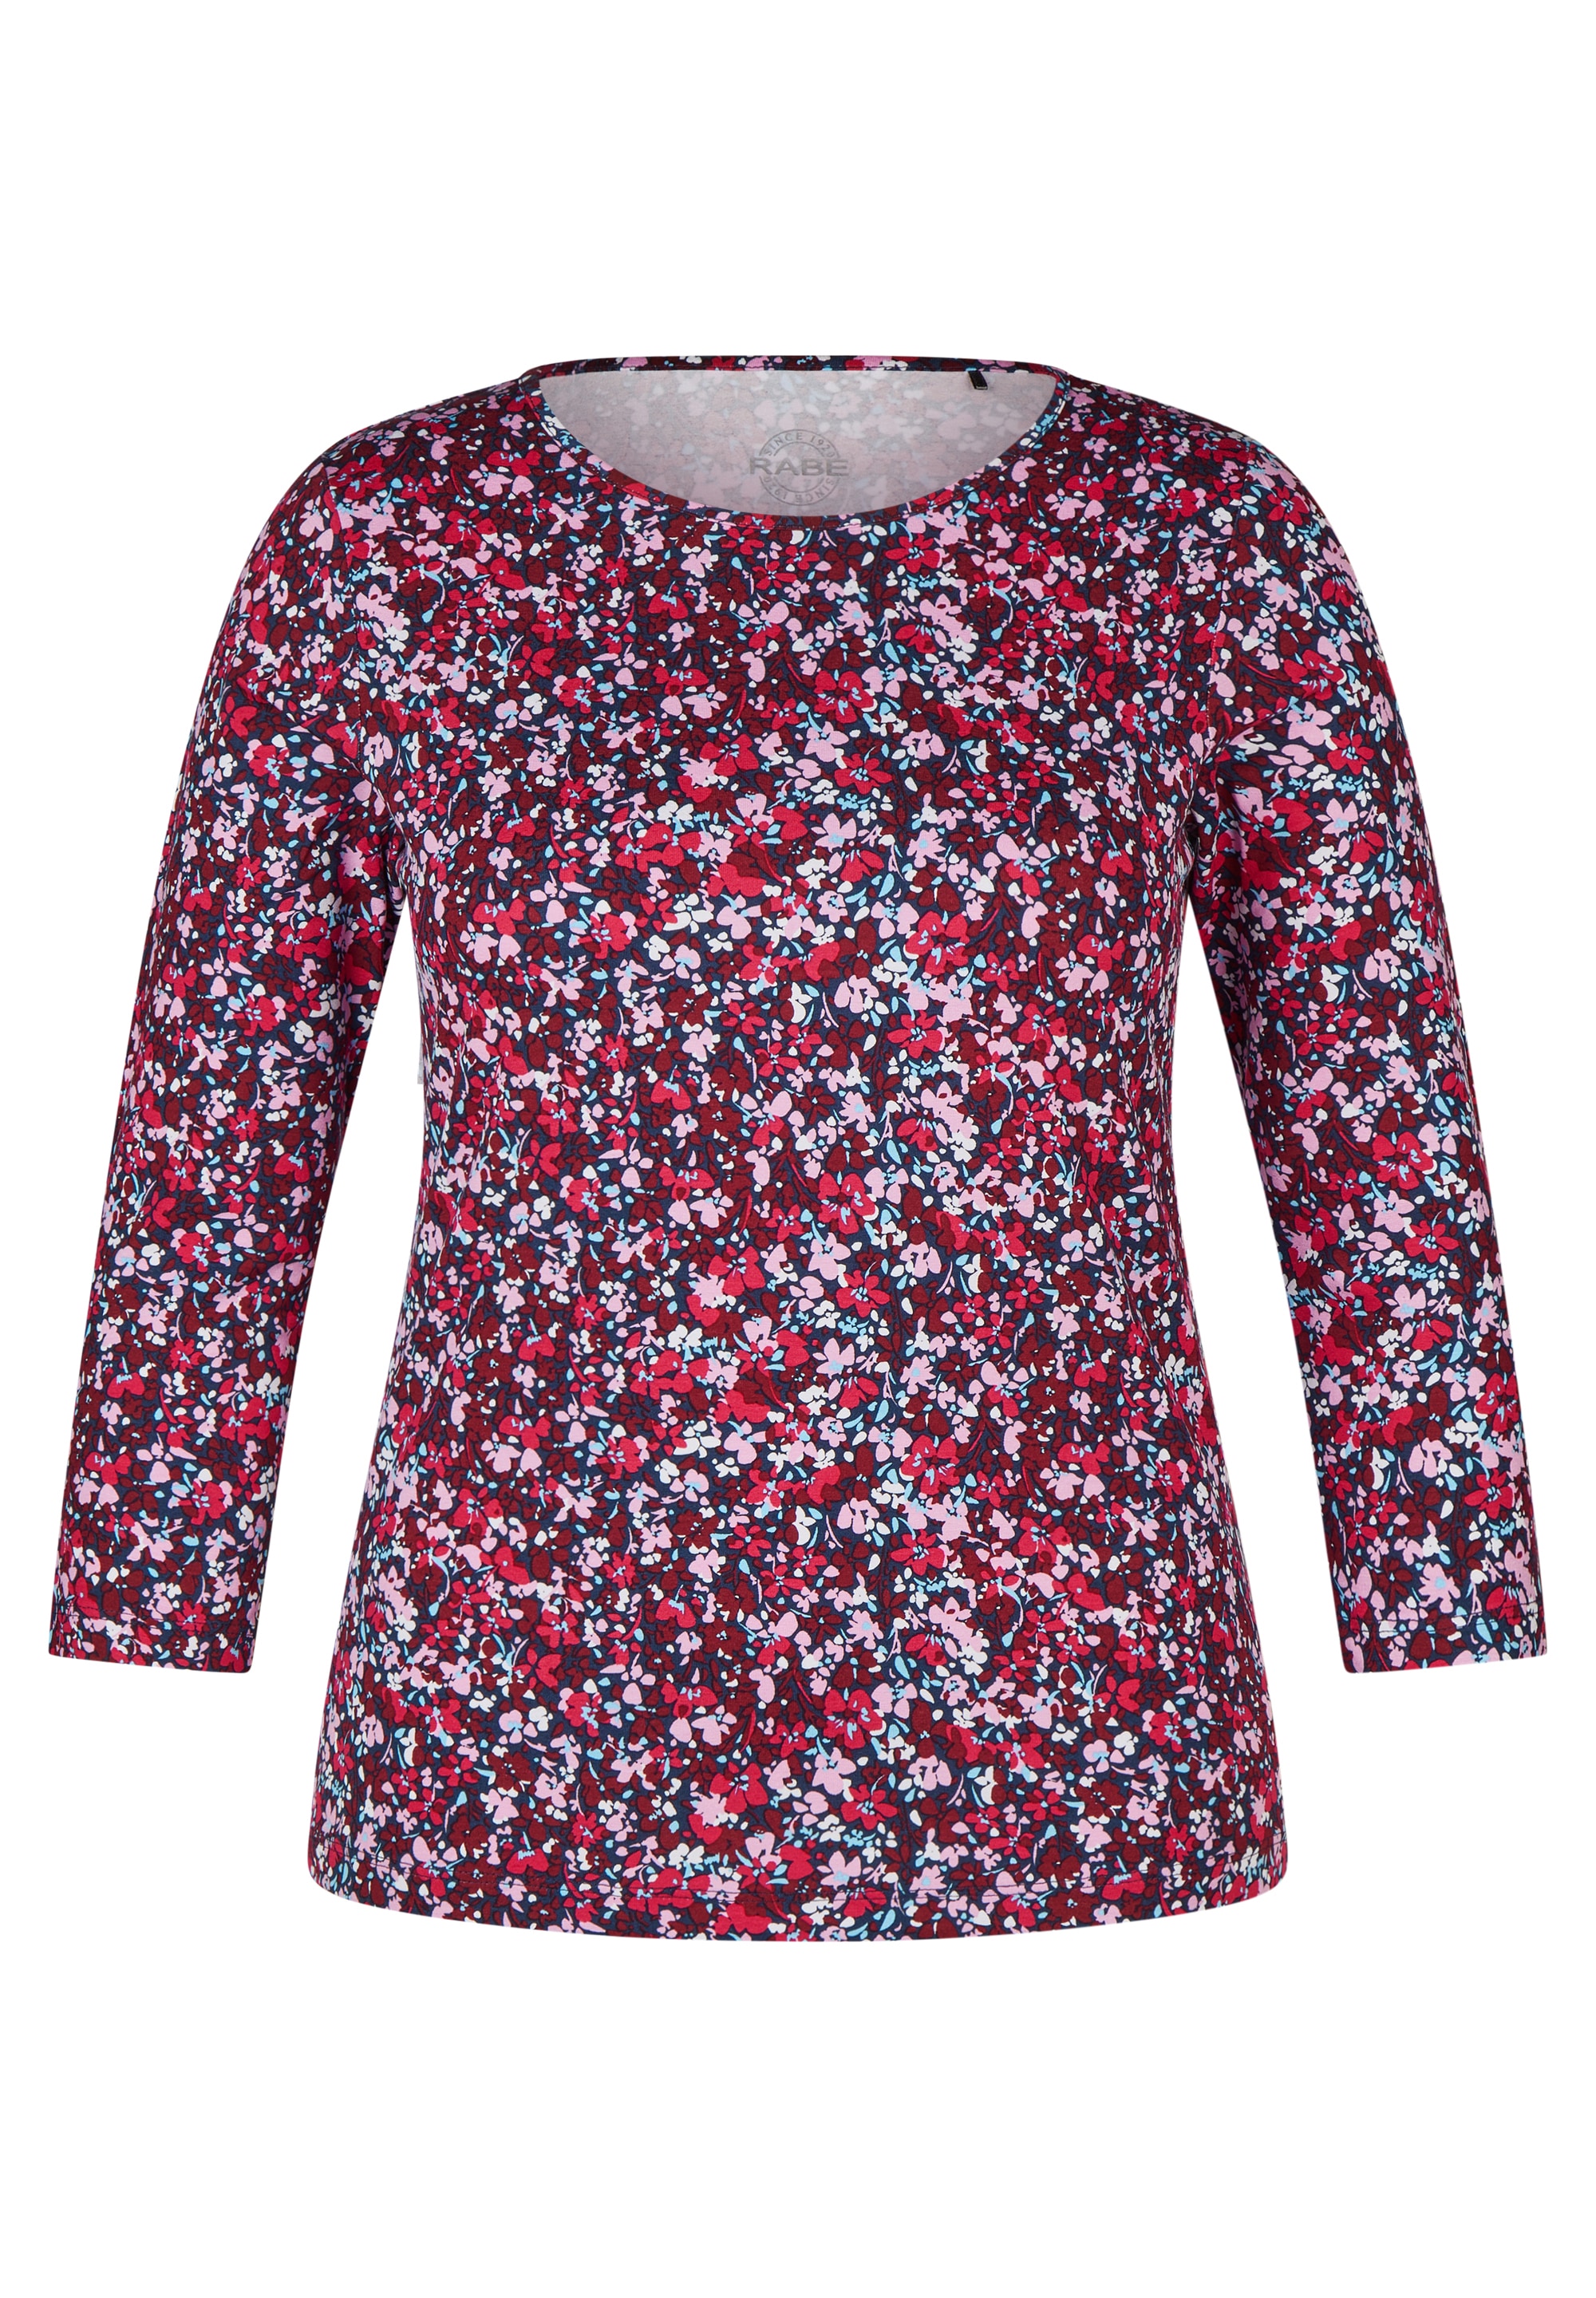 Rabe Shirtbluse, mit für | BAUR Allover-Muster kaufen floralem